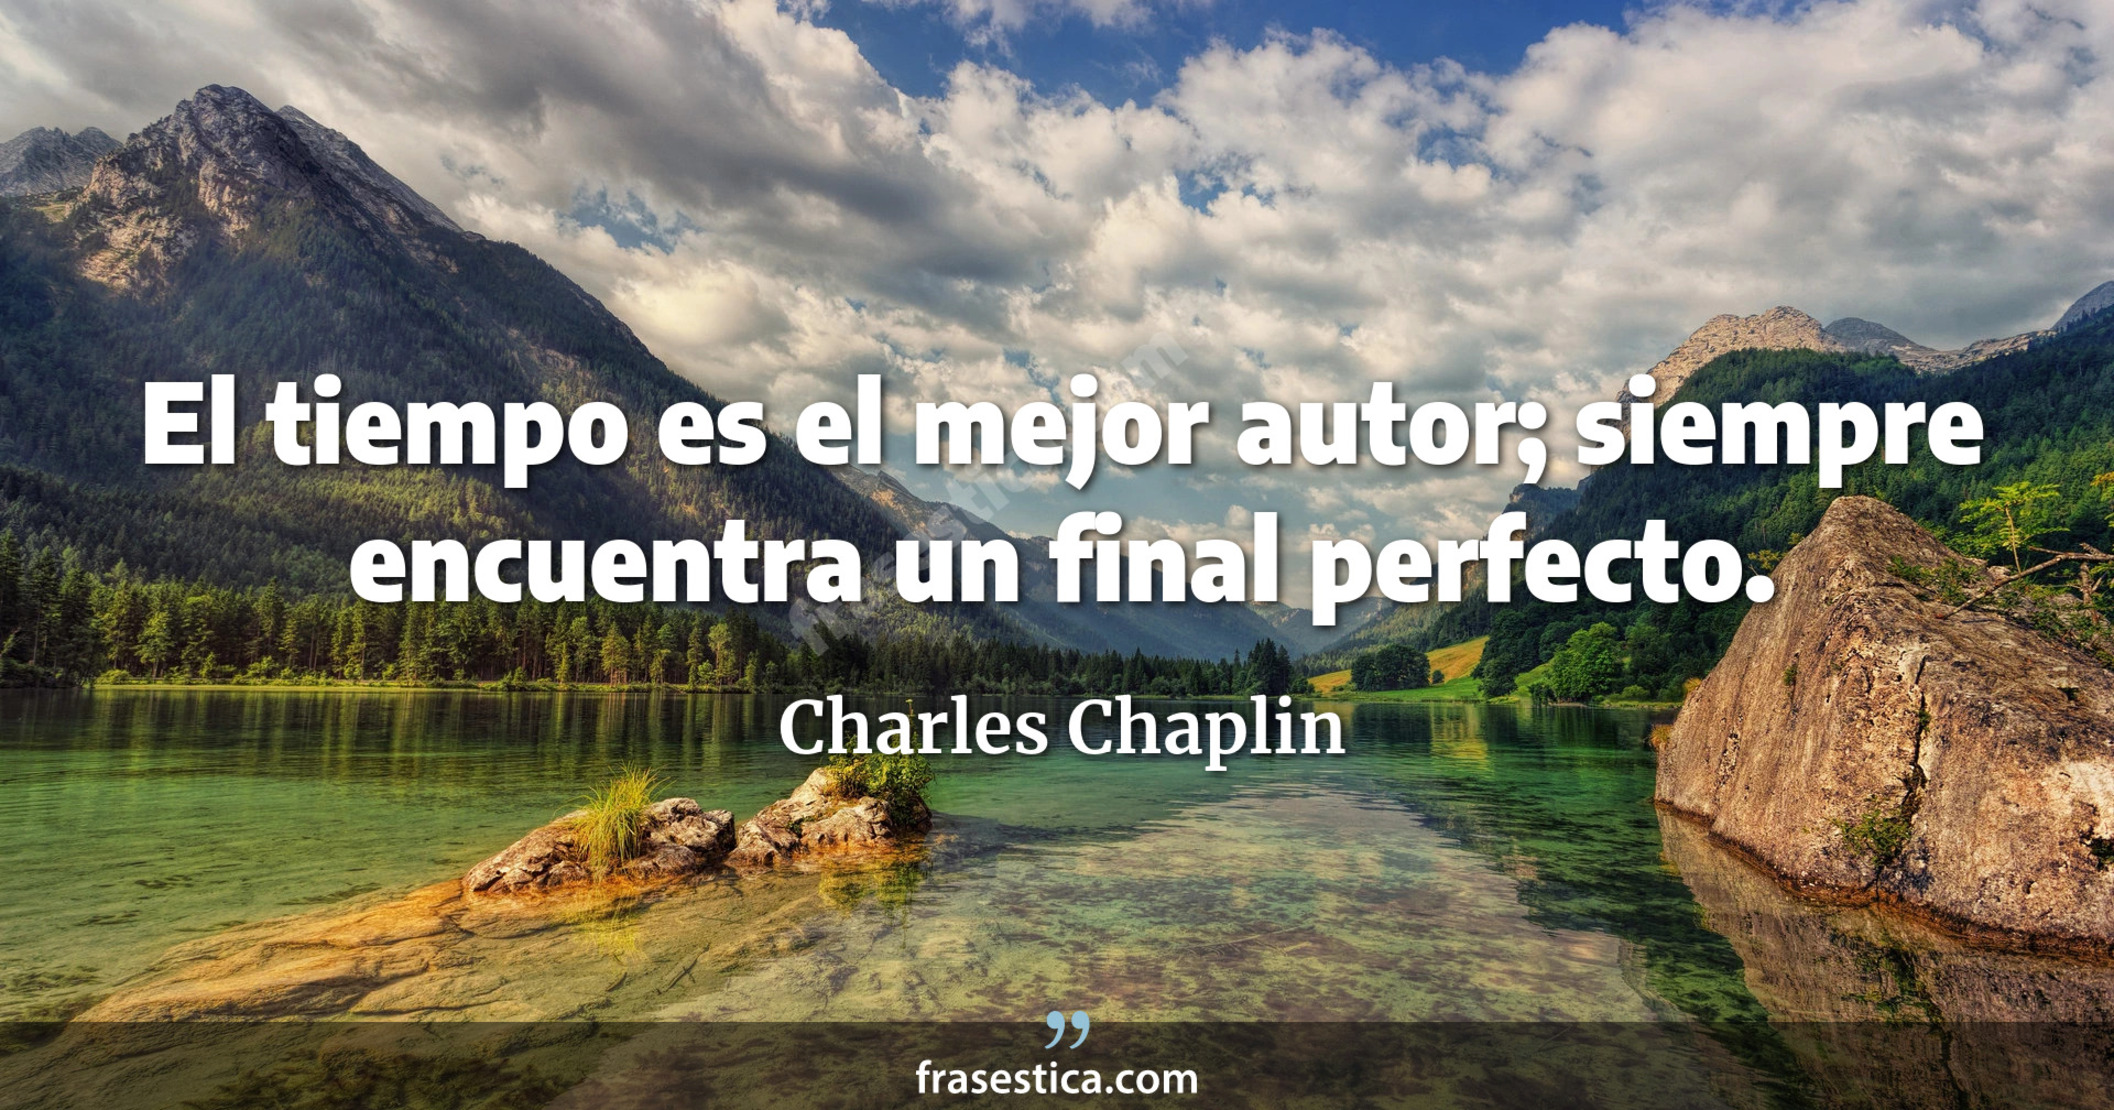 El tiempo es el mejor autor; siempre encuentra un final perfecto. - Charles Chaplin